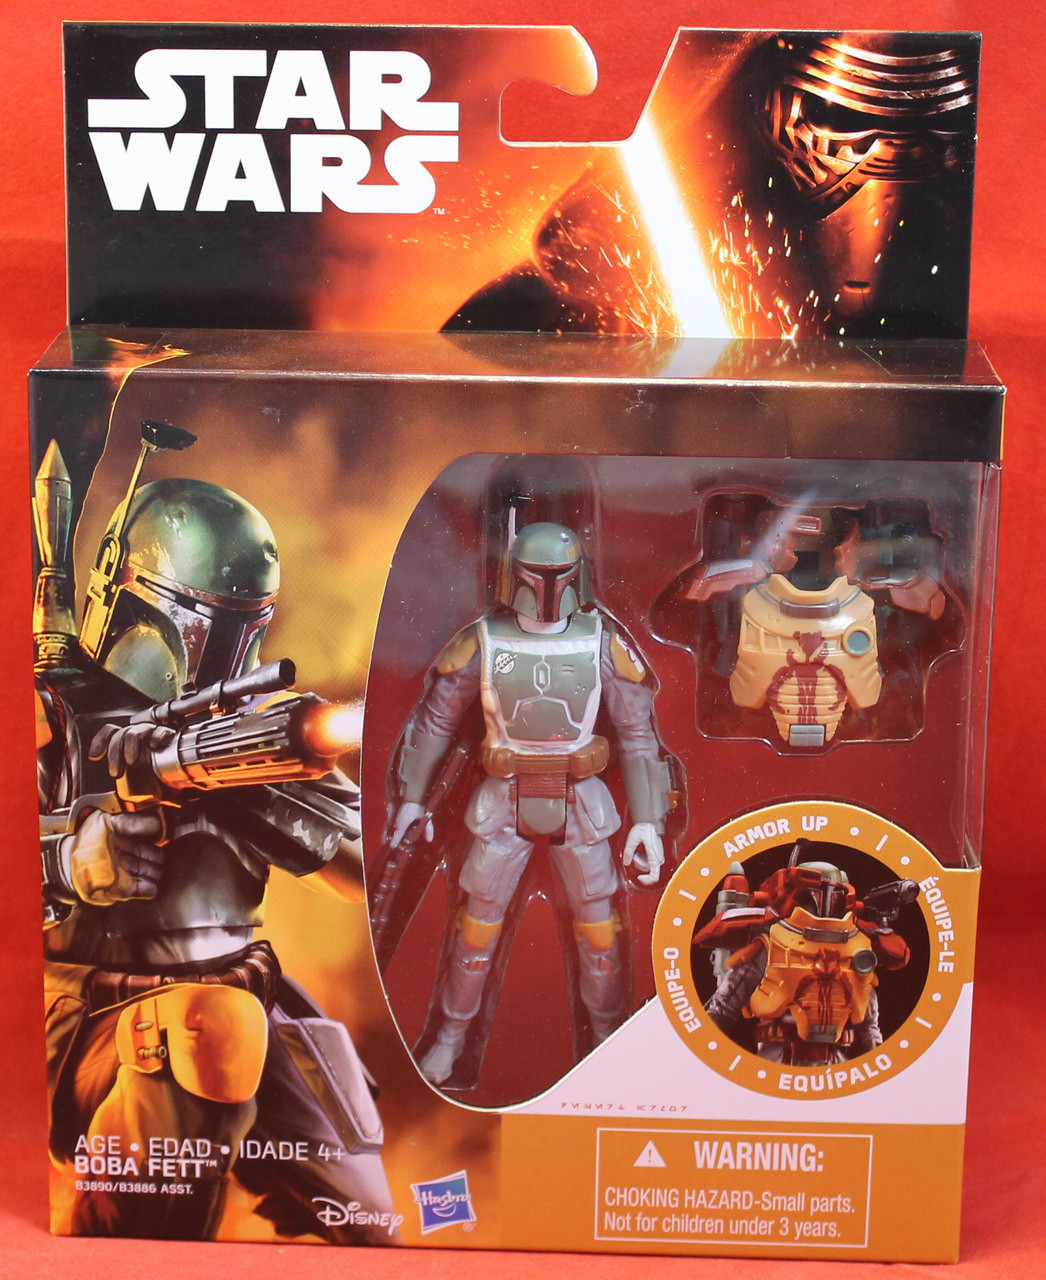 Star Wars TFA The Force Awakens Armor Up 3.75" Boba Fett